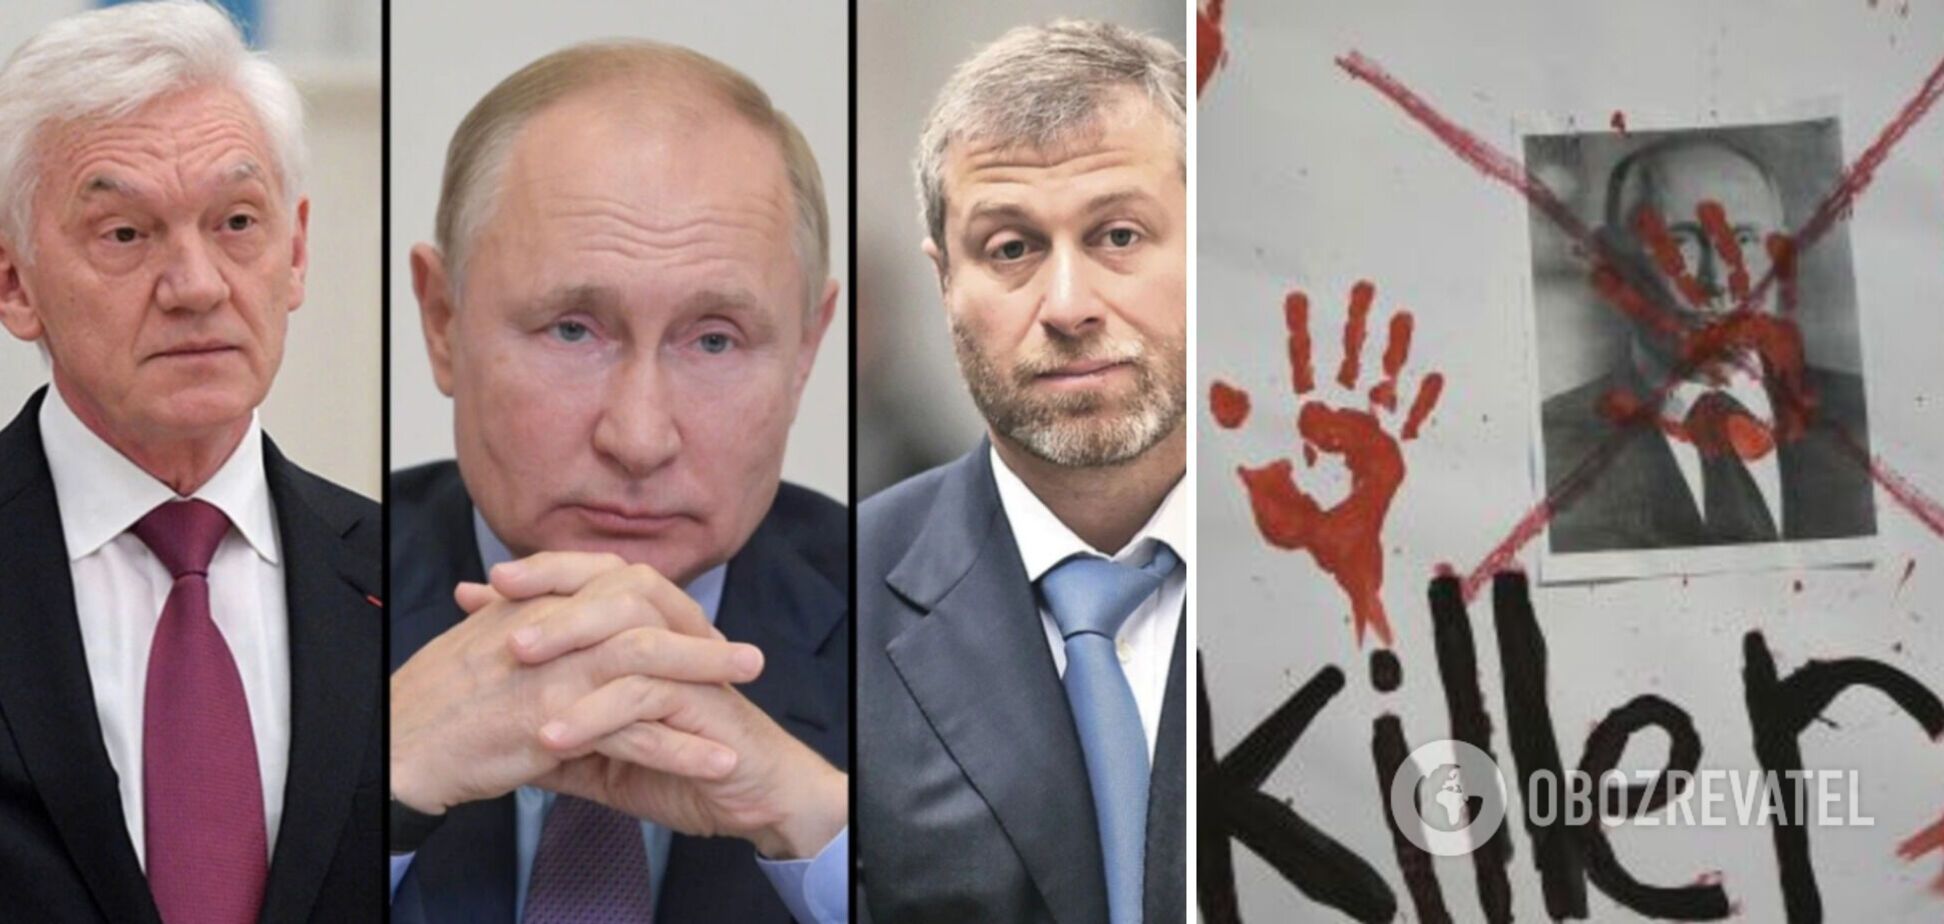 Постраждалі від санкцій російські олігархи хочуть зупинити Путіна: готові до радикальних заходів – розвідка